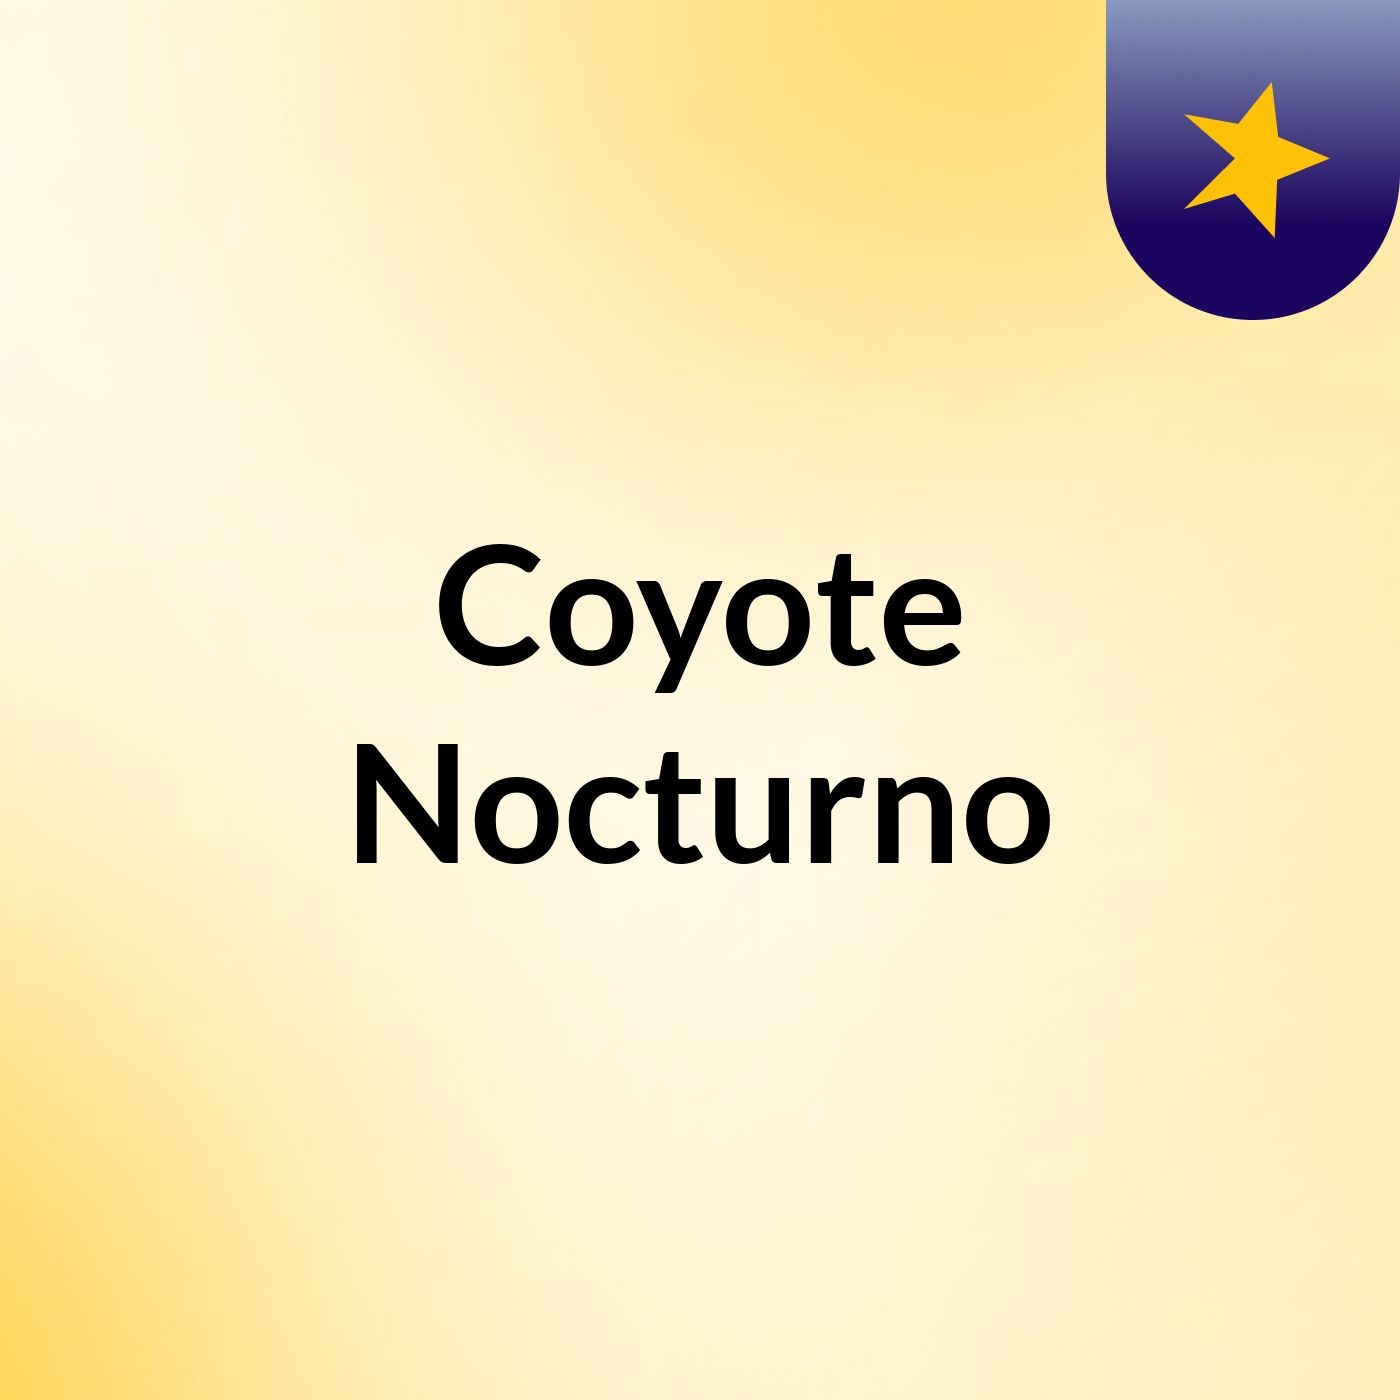 Coyote Nocturno